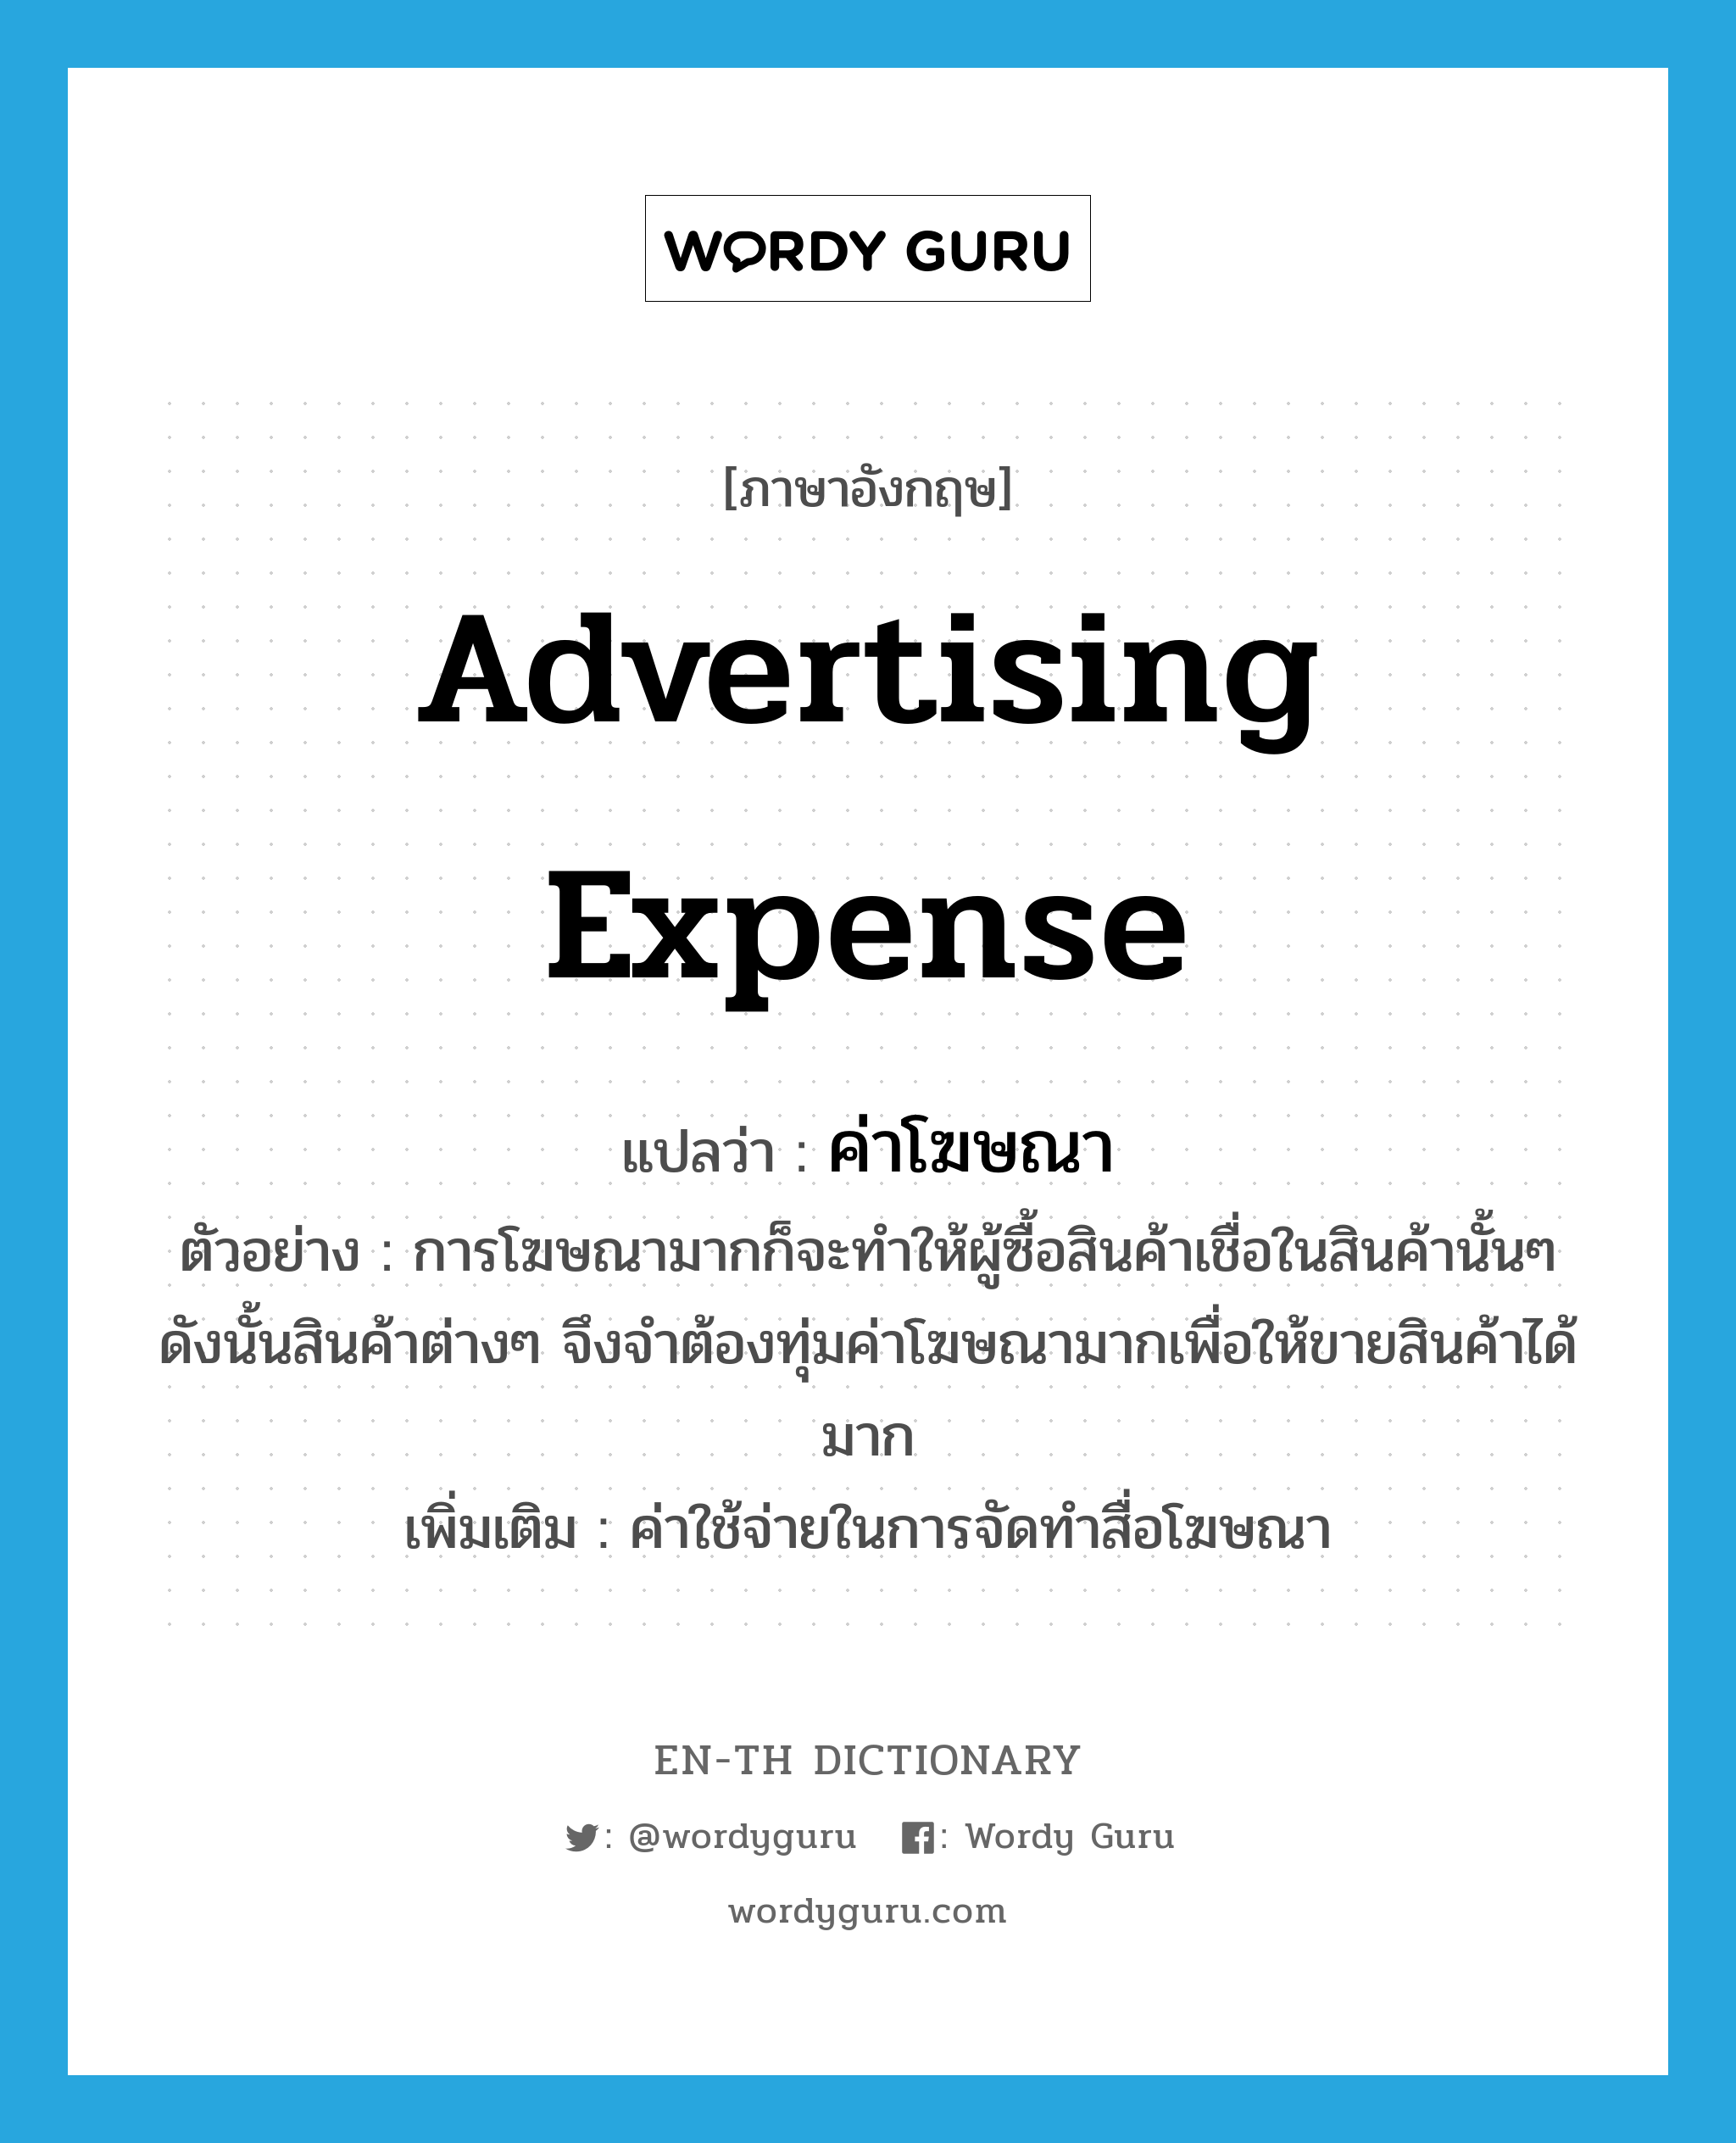 advertising expense แปลว่า?, คำศัพท์ภาษาอังกฤษ advertising expense แปลว่า ค่าโฆษณา ประเภท N ตัวอย่าง การโฆษณามากก็จะทำให้ผู้ซื้อสินค้าเชื่อในสินค้านั้นๆ ดังนั้นสินค้าต่างๆ จึงจำต้องทุ่มค่าโฆษณามากเพื่อให้ขายสินค้าได้มาก เพิ่มเติม ค่าใช้จ่ายในการจัดทำสื่อโฆษณา หมวด N